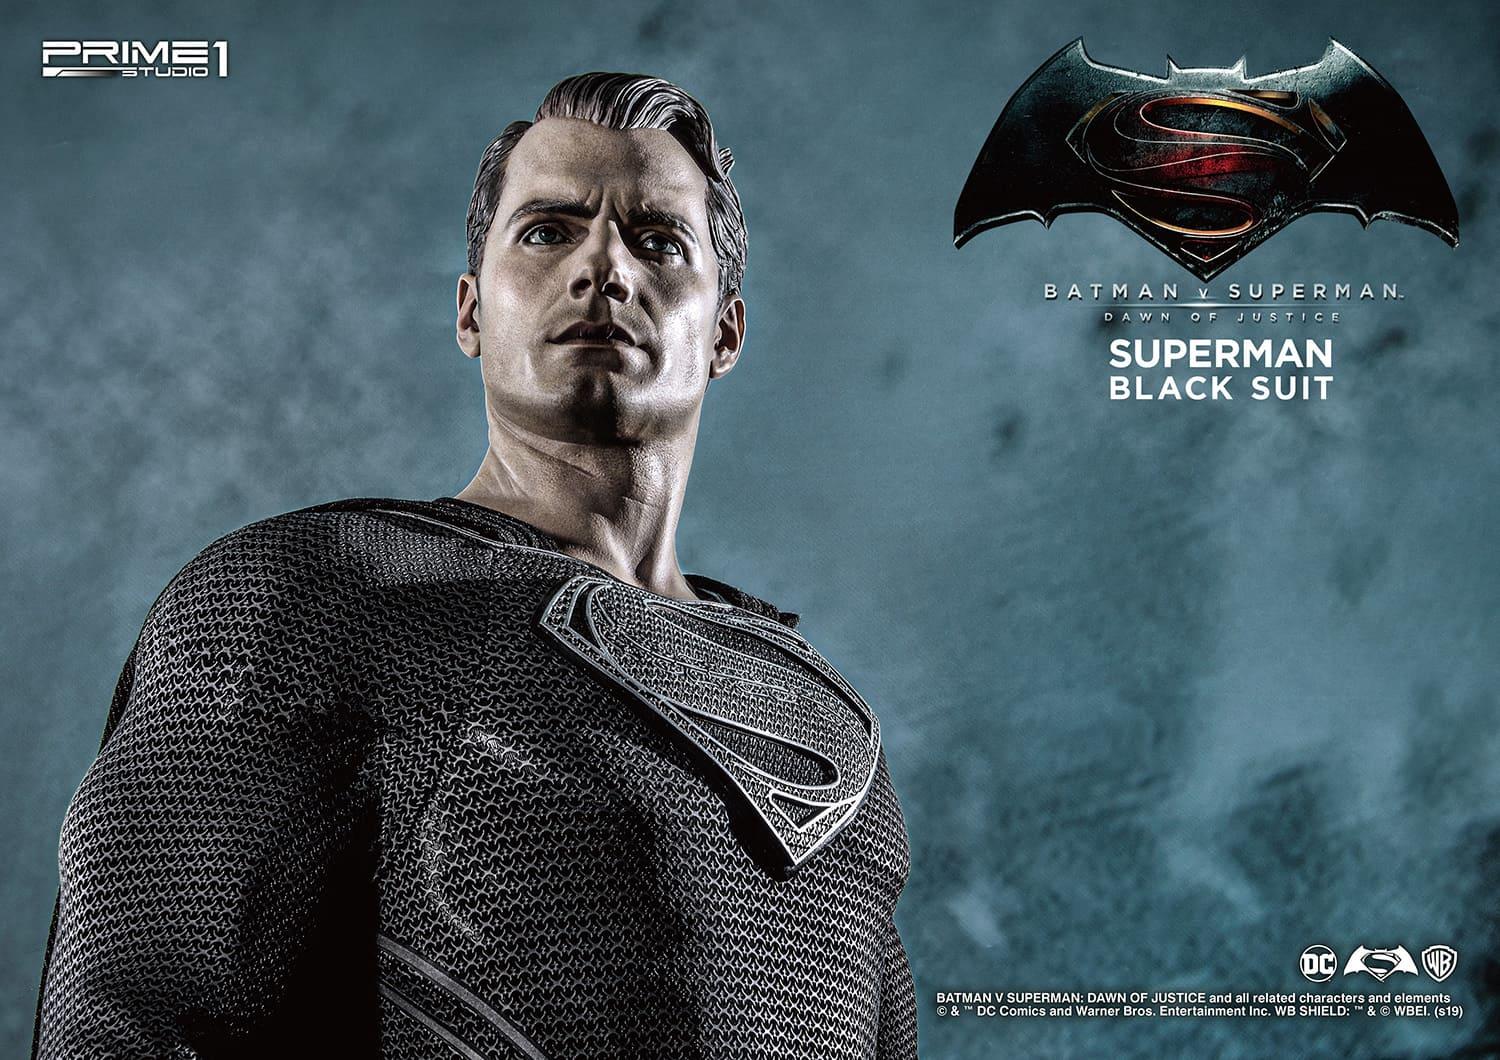 Black Suit Superman snyder cut | Superman wallpaper, Superman pictures,  Superman hd wallpaper